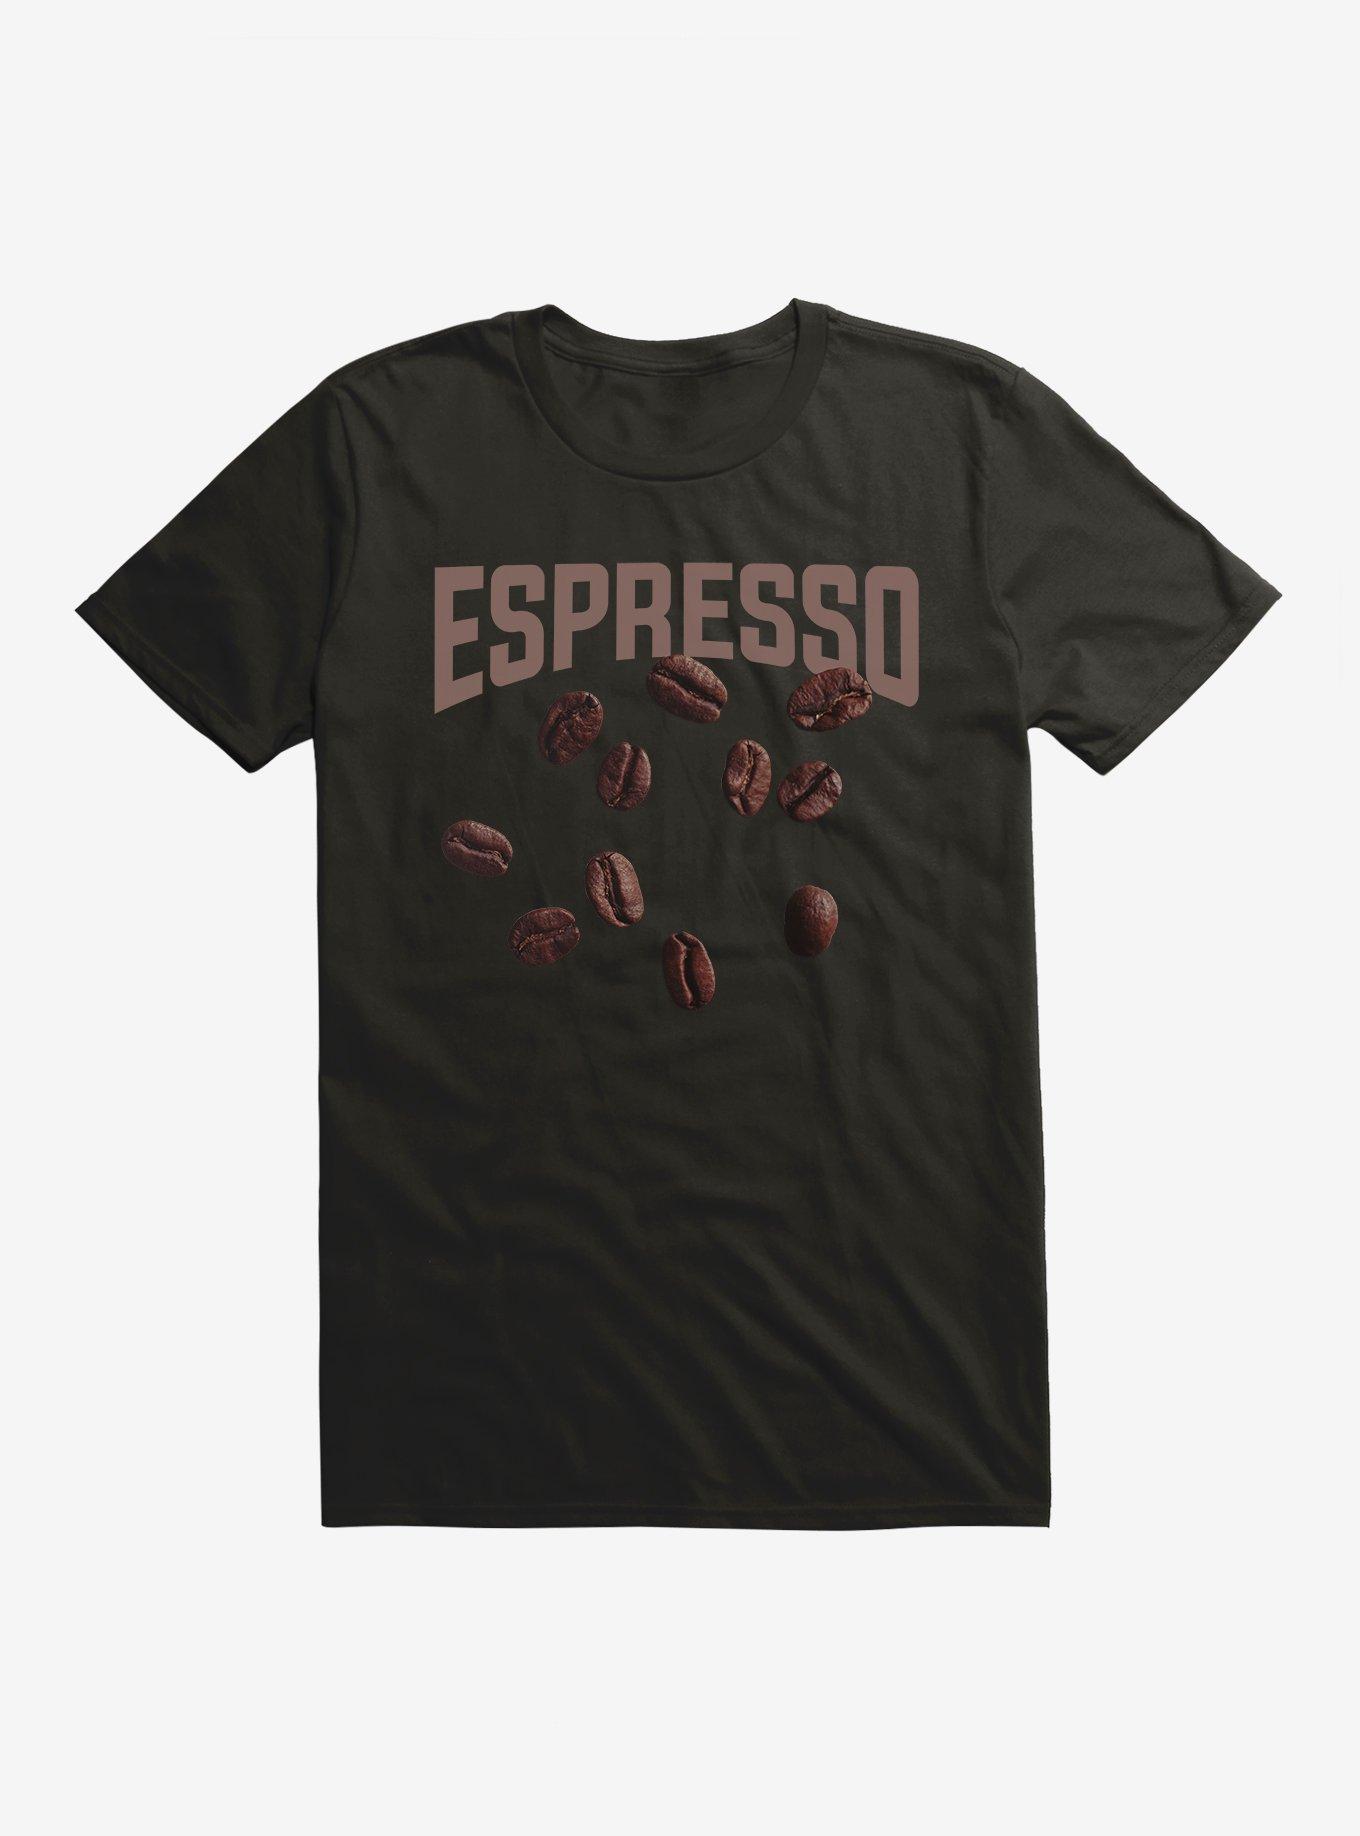 Hot Topic Espresso T-Shirt, BLACK, hi-res